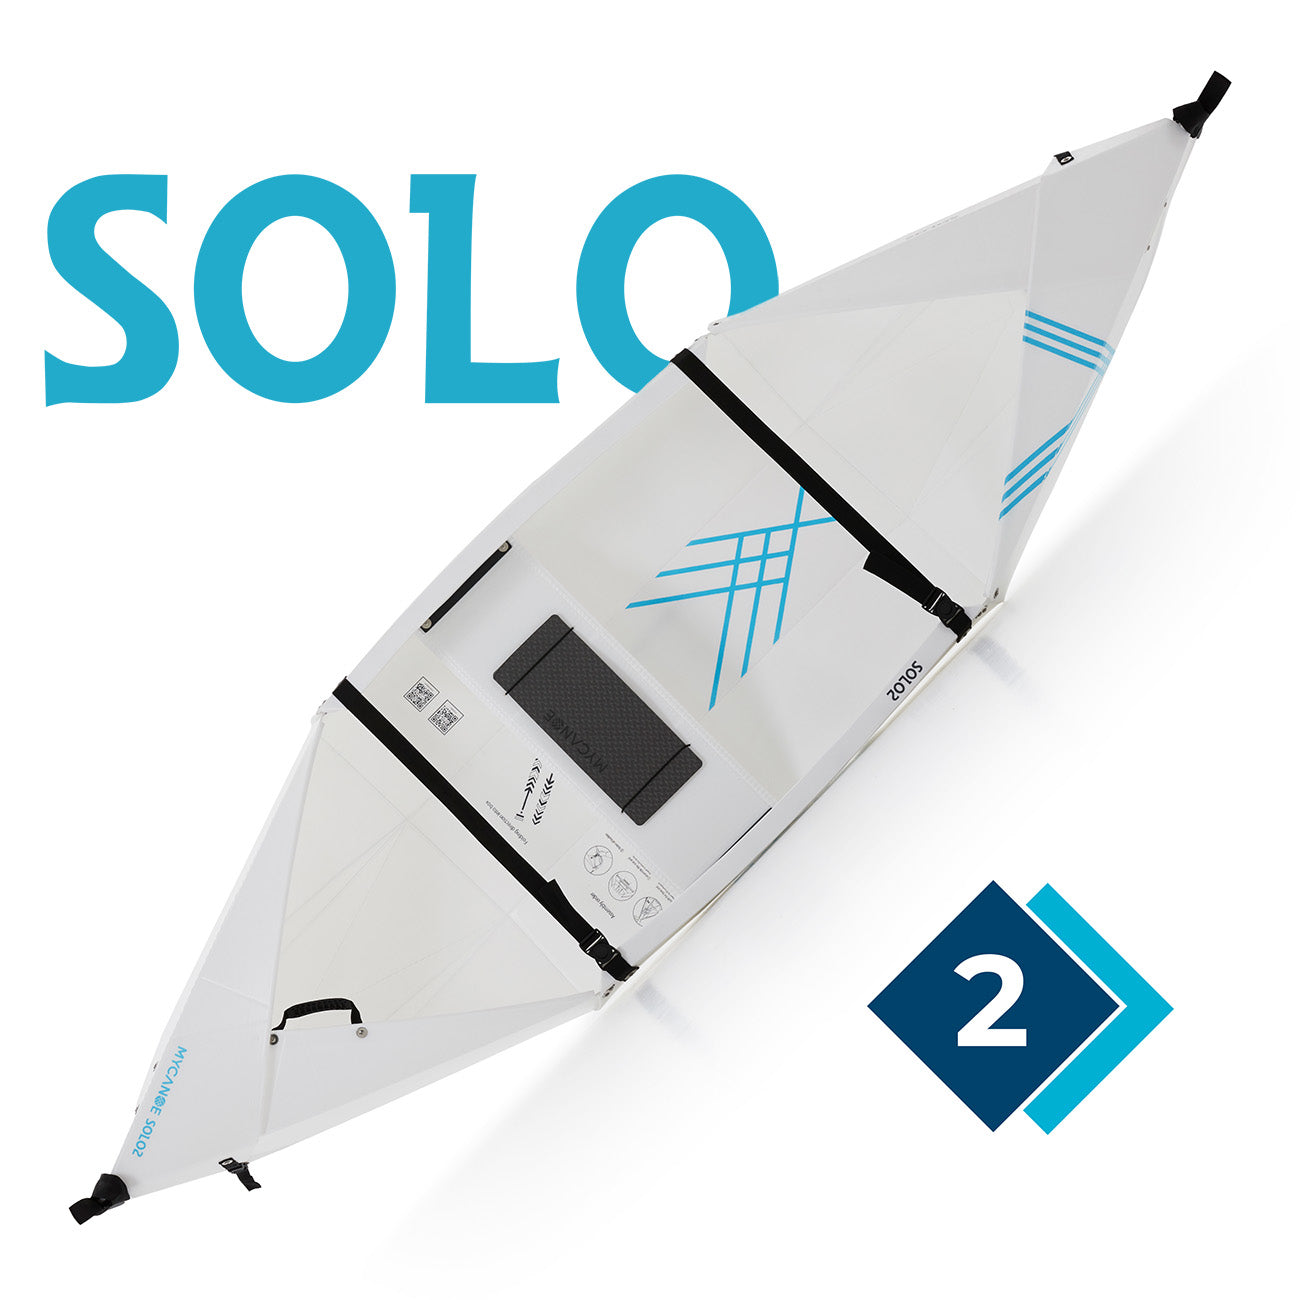 MyCanoe Solo 2: Origami Folding Canoe Boat